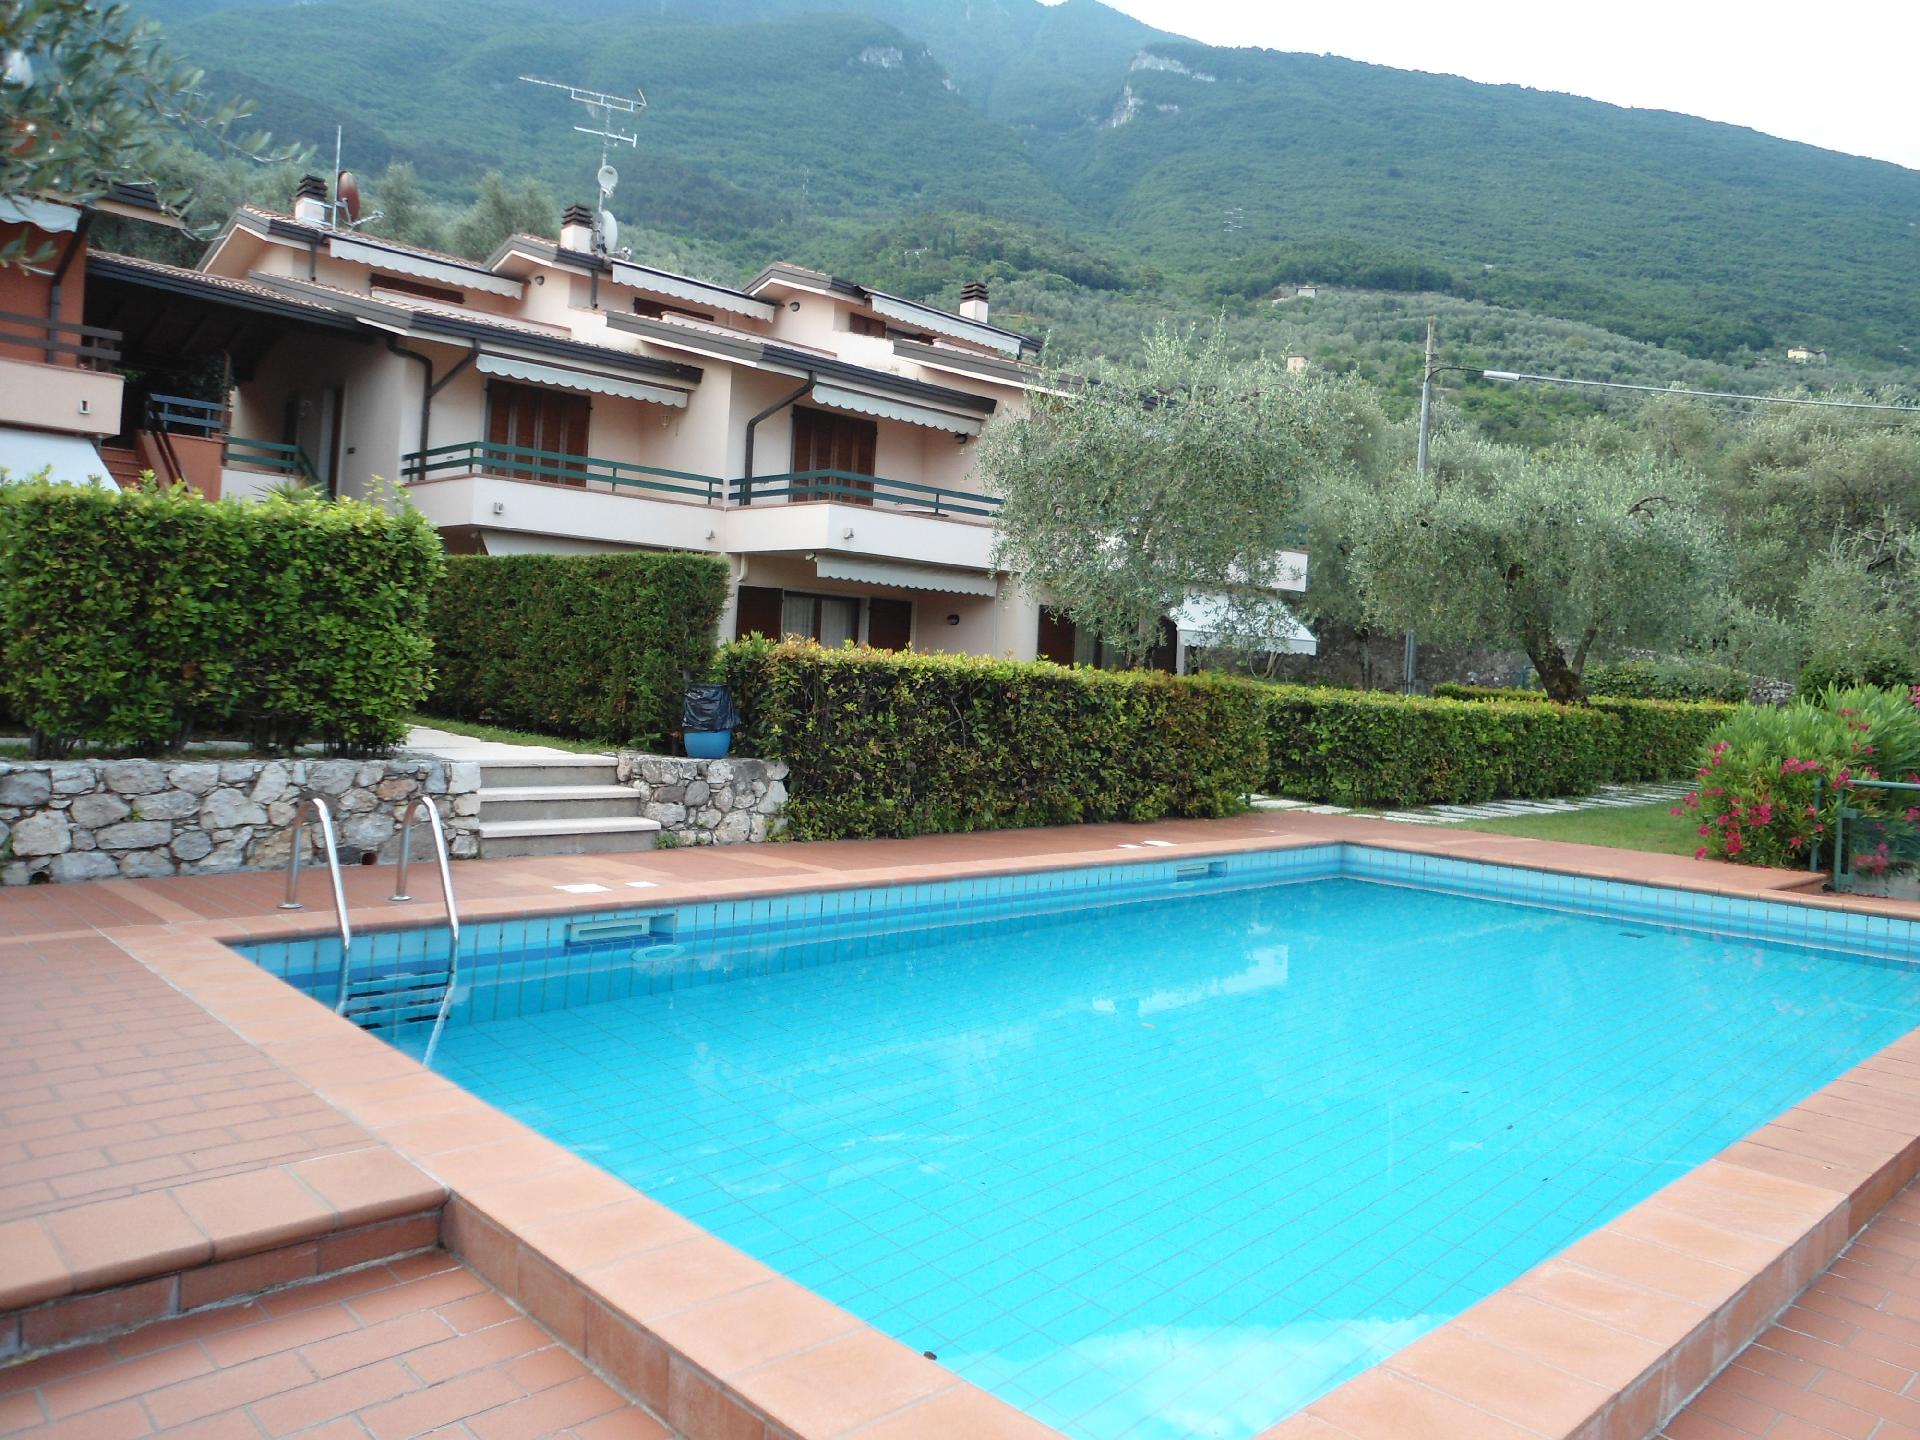 Ferienwohnung für 5 Personen ca. 65 m² i Ferienhaus in Italien